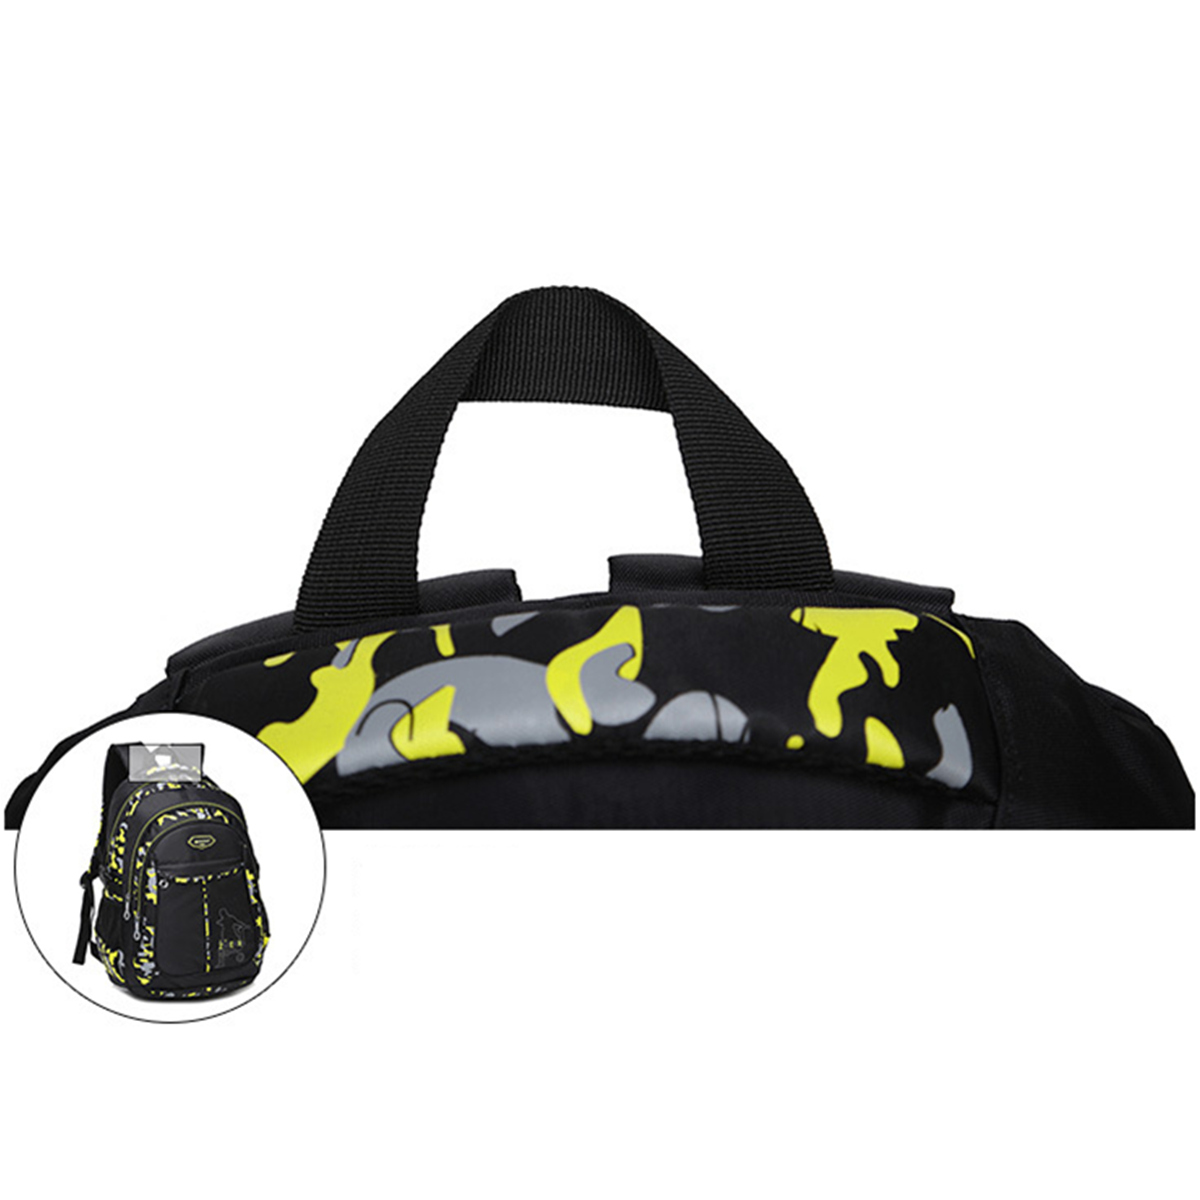 Men-Waterproof-Big-Capacity-Travel-Outdoor-Laptop-Shoulders-Bag-School-Backpack-1188252-9